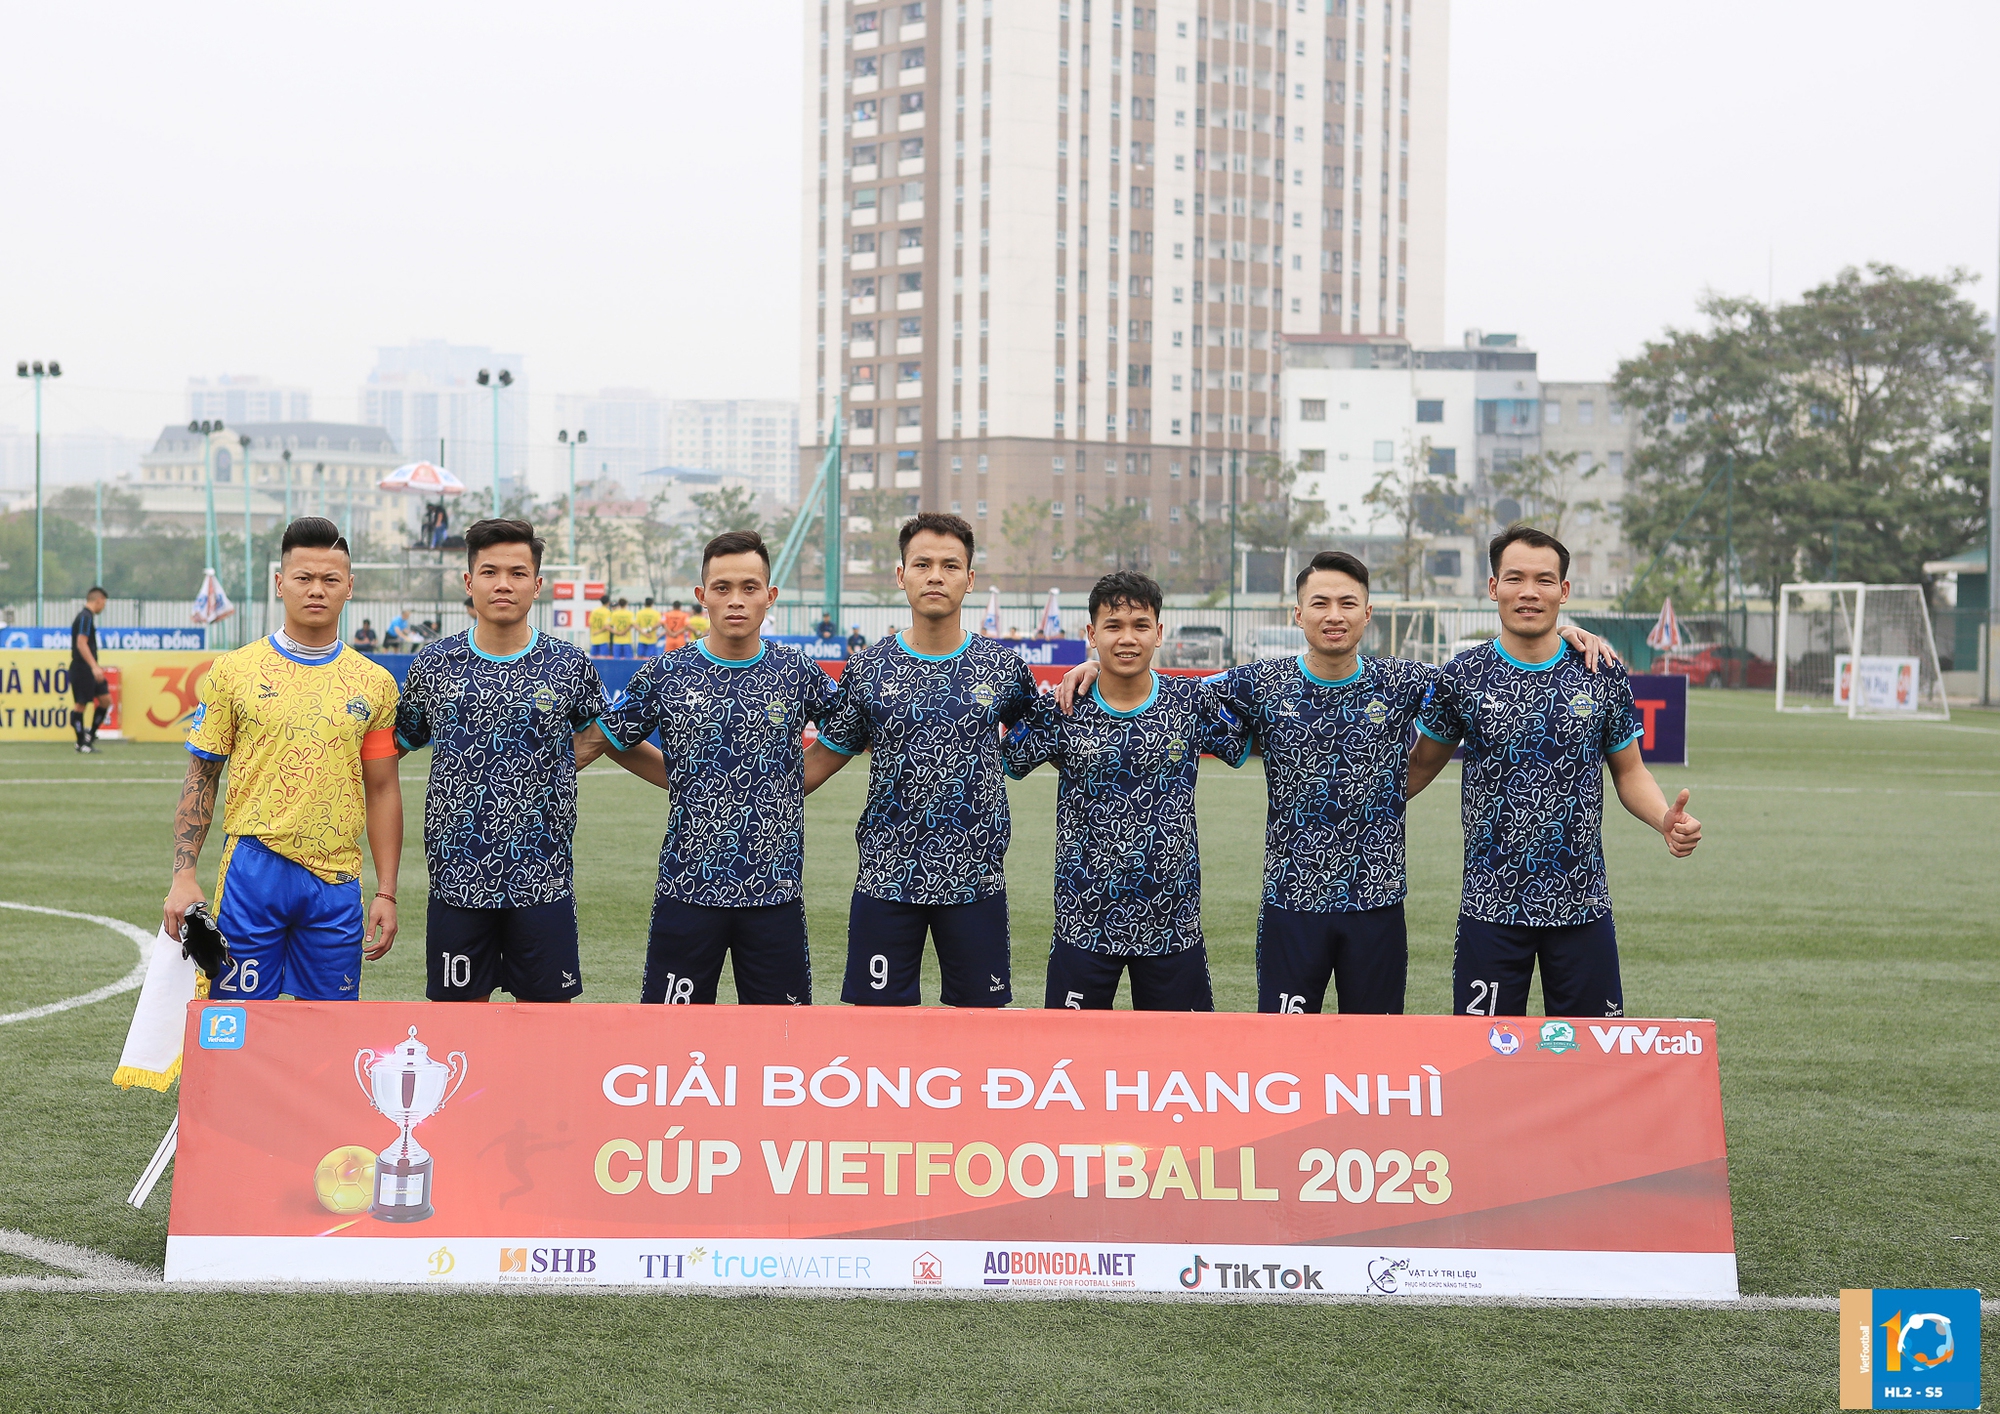 FC Soái Ca HY: Chúng tôi đến đây để tận hưởng niềm đam mê với bóng đá - Ảnh 1.